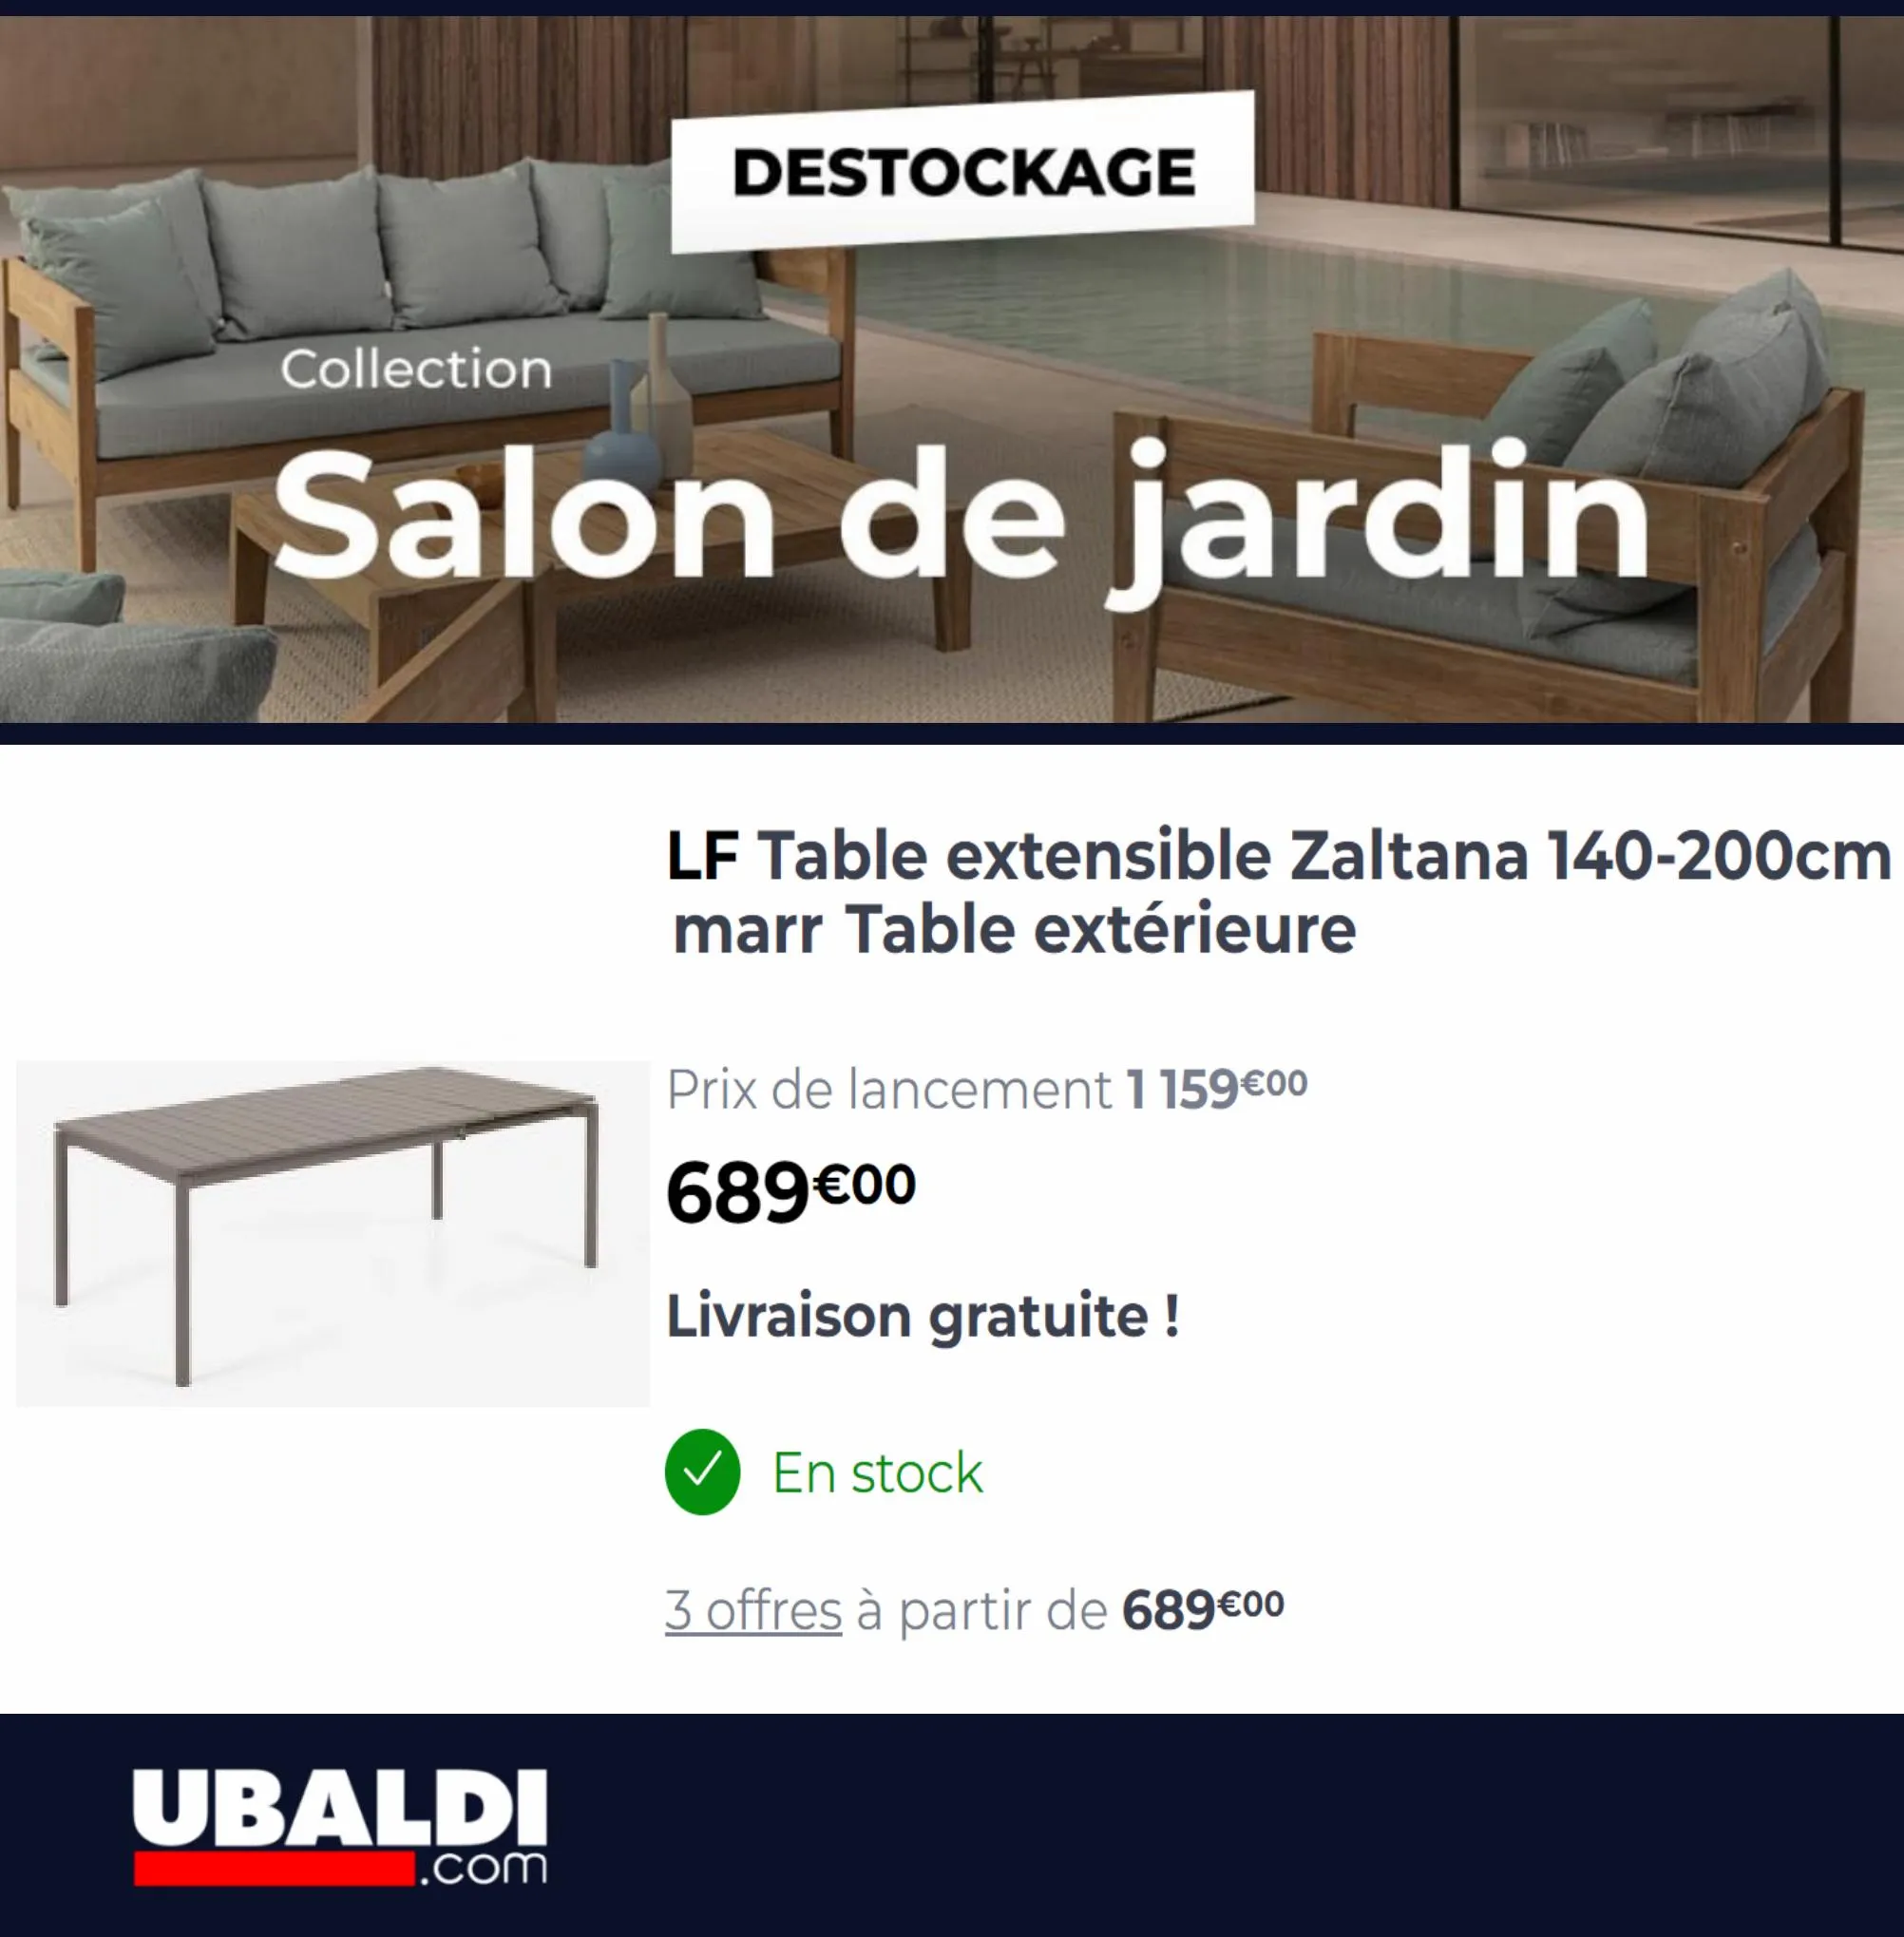 Catalogue Destockage Salon de Jardin, page 00006